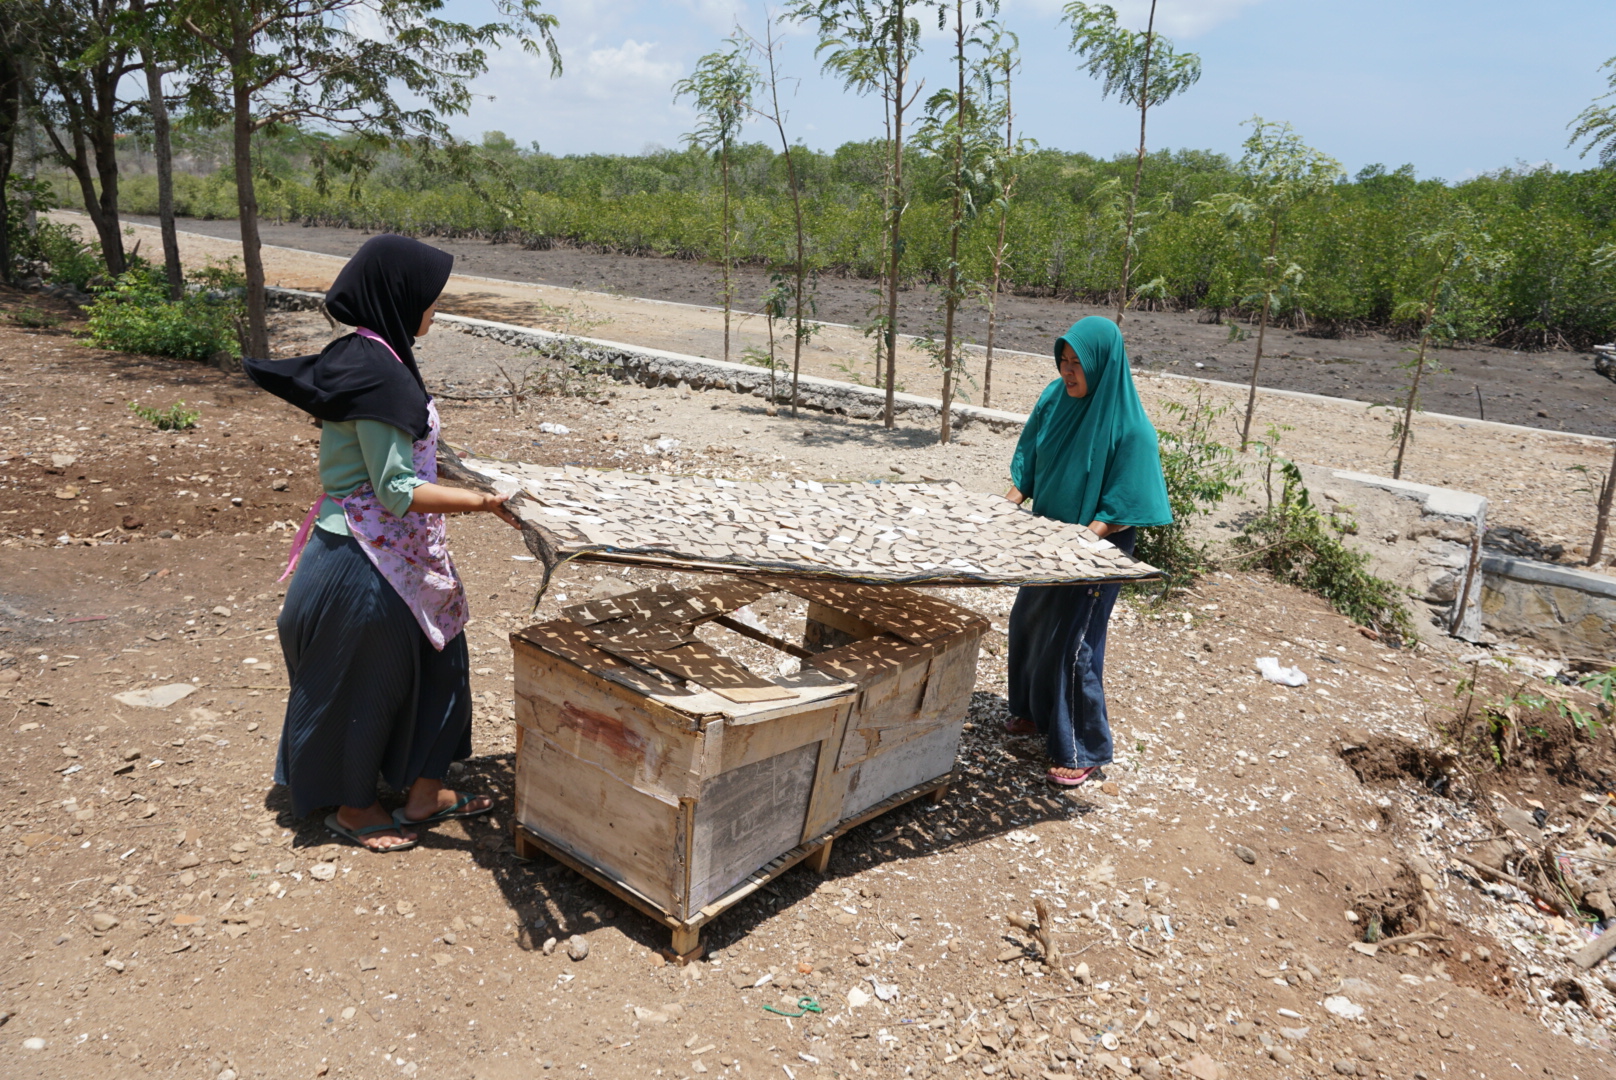 Dua perempuan Desa Paremas menjemur kerupuk cangkang kepiting. Di belakang mereka tampak hutan mangrove yang cukup lebat yang menjadi rumah bagi kepiting yang dijual ke kota. Limbah cangkang kepiting itu kini diolah menjadi kerupuk | Foto: Fathul Rakhman/ Mongabay Indonesia